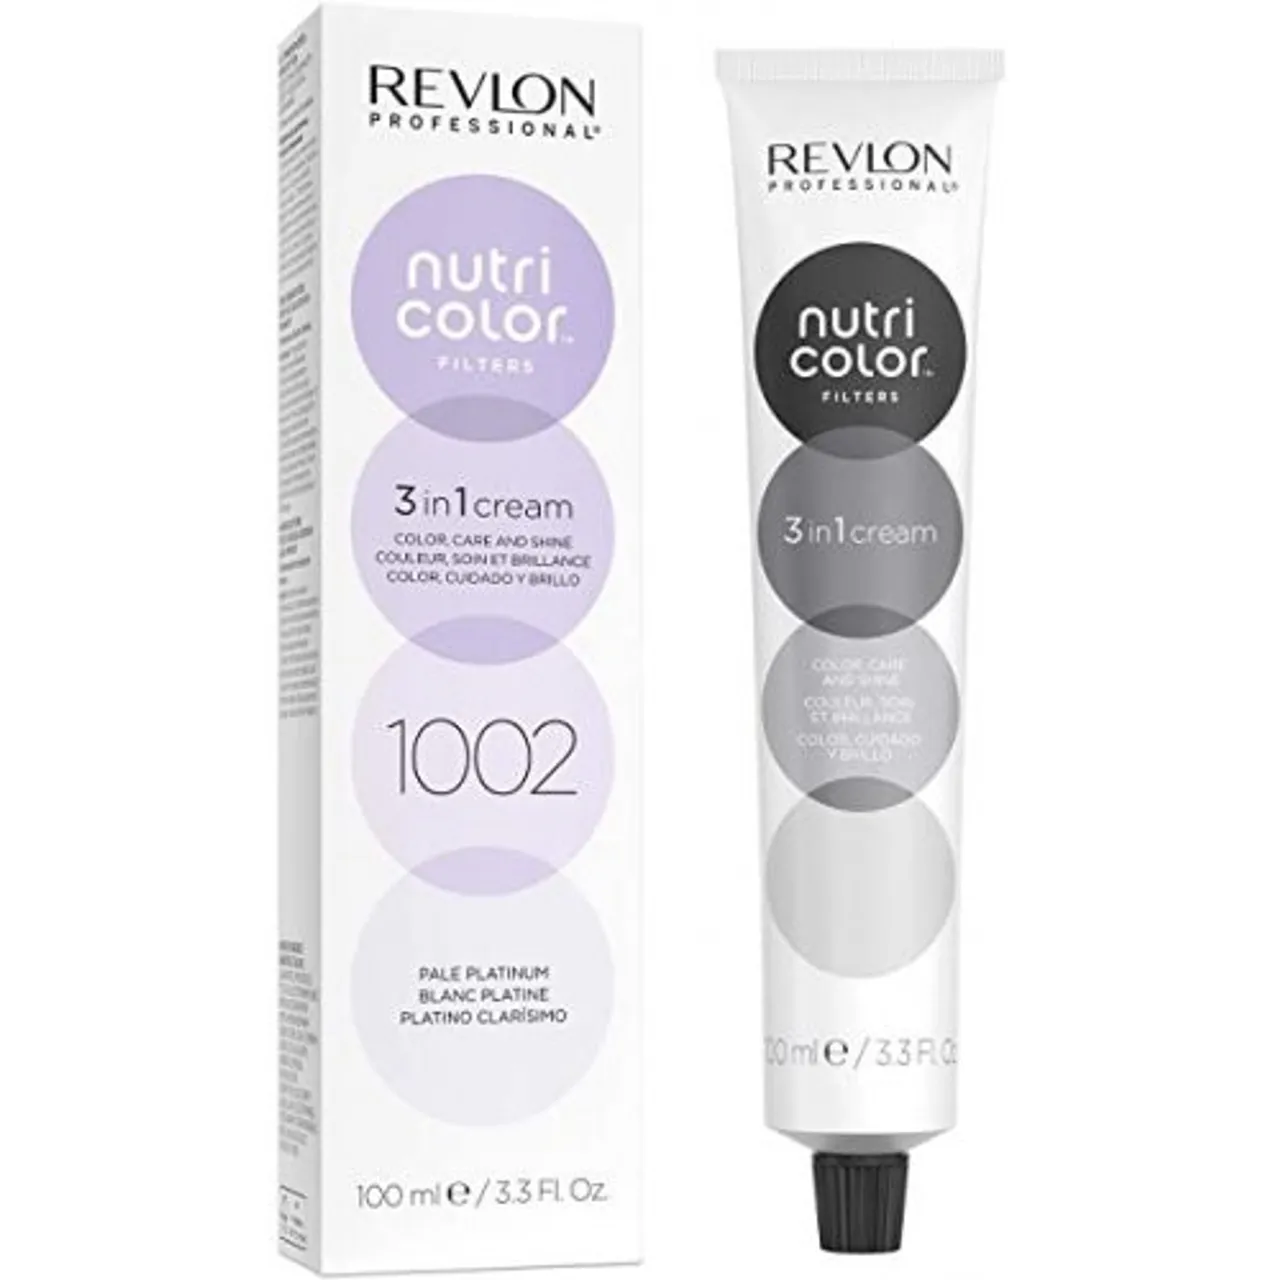 Revlon Professional Nutri Color Filters Creme No. 1022